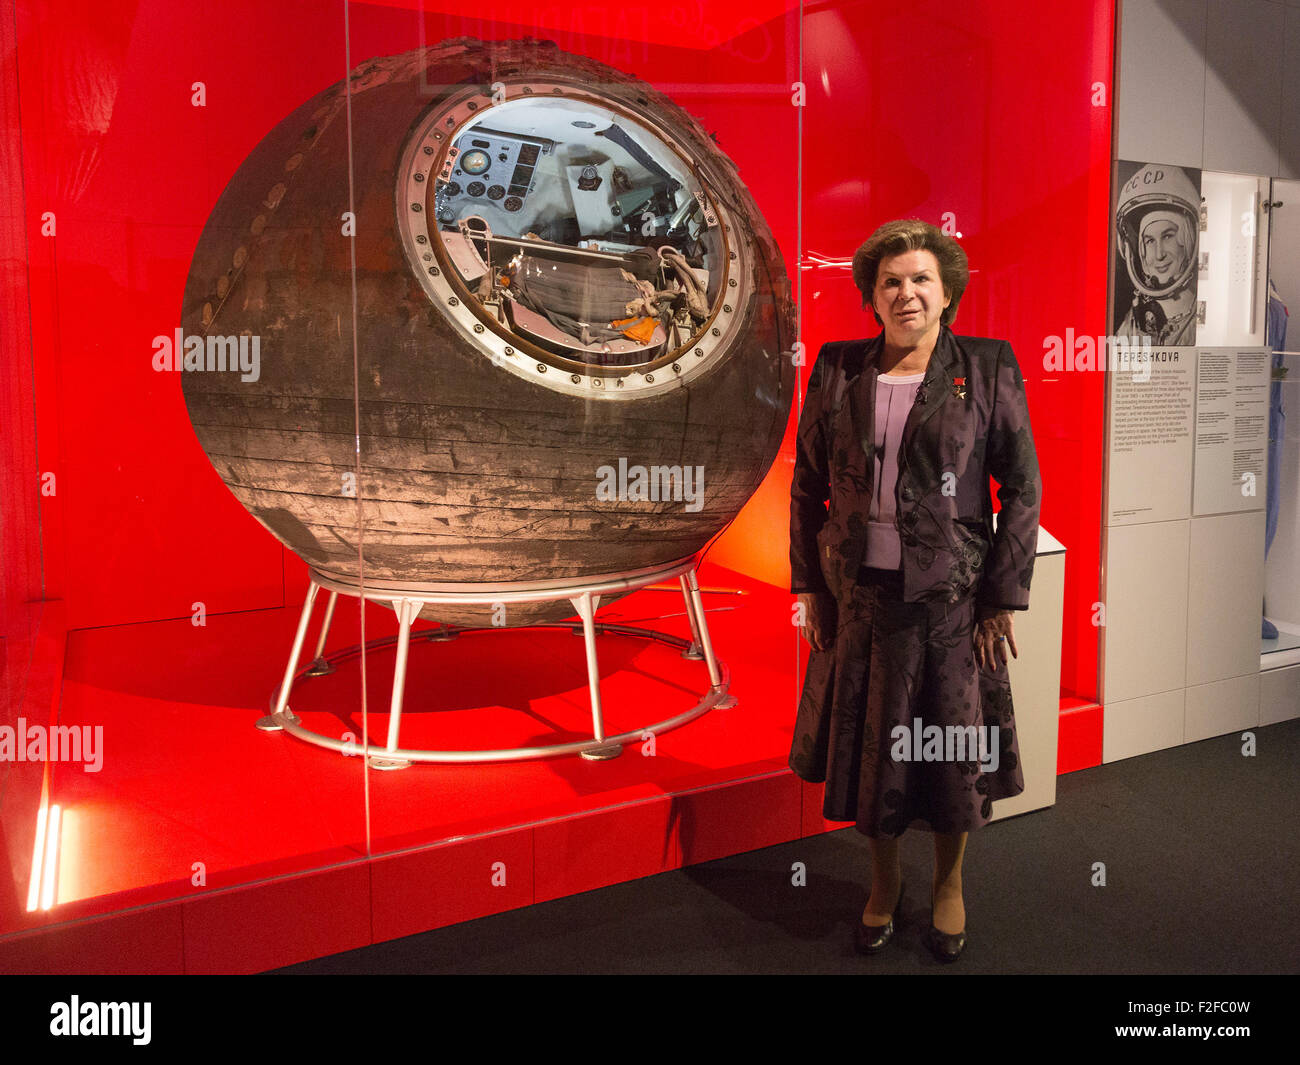 Londres, Reino Unido. 17/09/2015. Valentina Tereshkova se abre la exposición y se reunieron con el Vostok-6, la nave espacial que llevó al espacio. La exposición cosmonautas - el nacimiento de la era espacial se abre en el Museo de la ciencia el 18 de septiembre de 2015 y durará hasta el 13 de marzo de 2016. Foto de stock